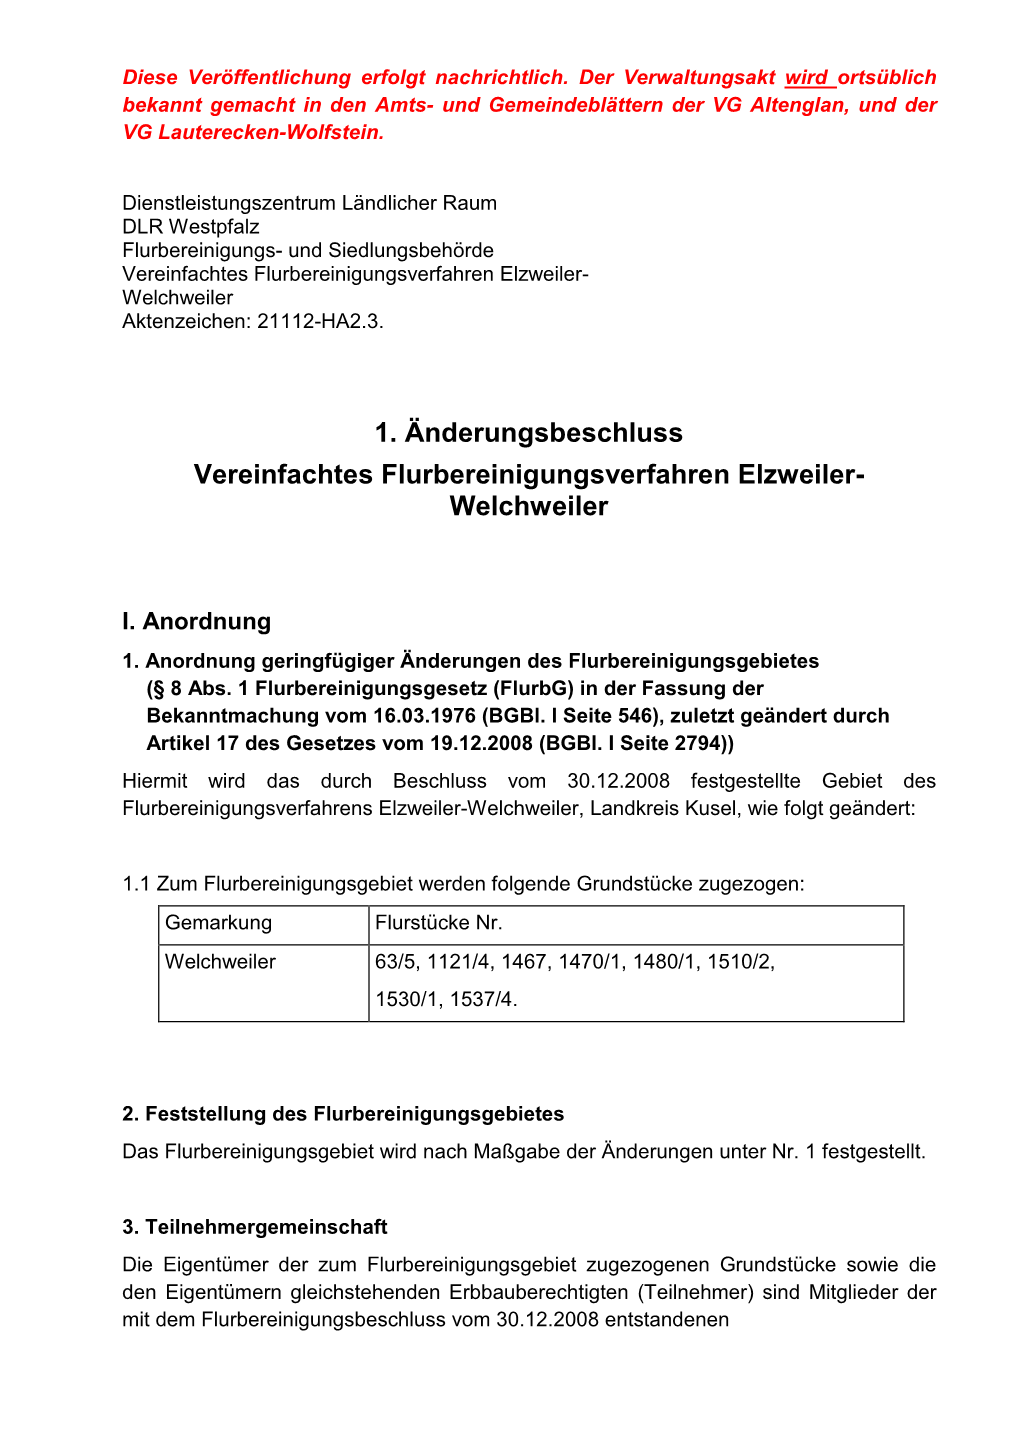 Welchweiler Aktenzeichen: 21112-HA2.3